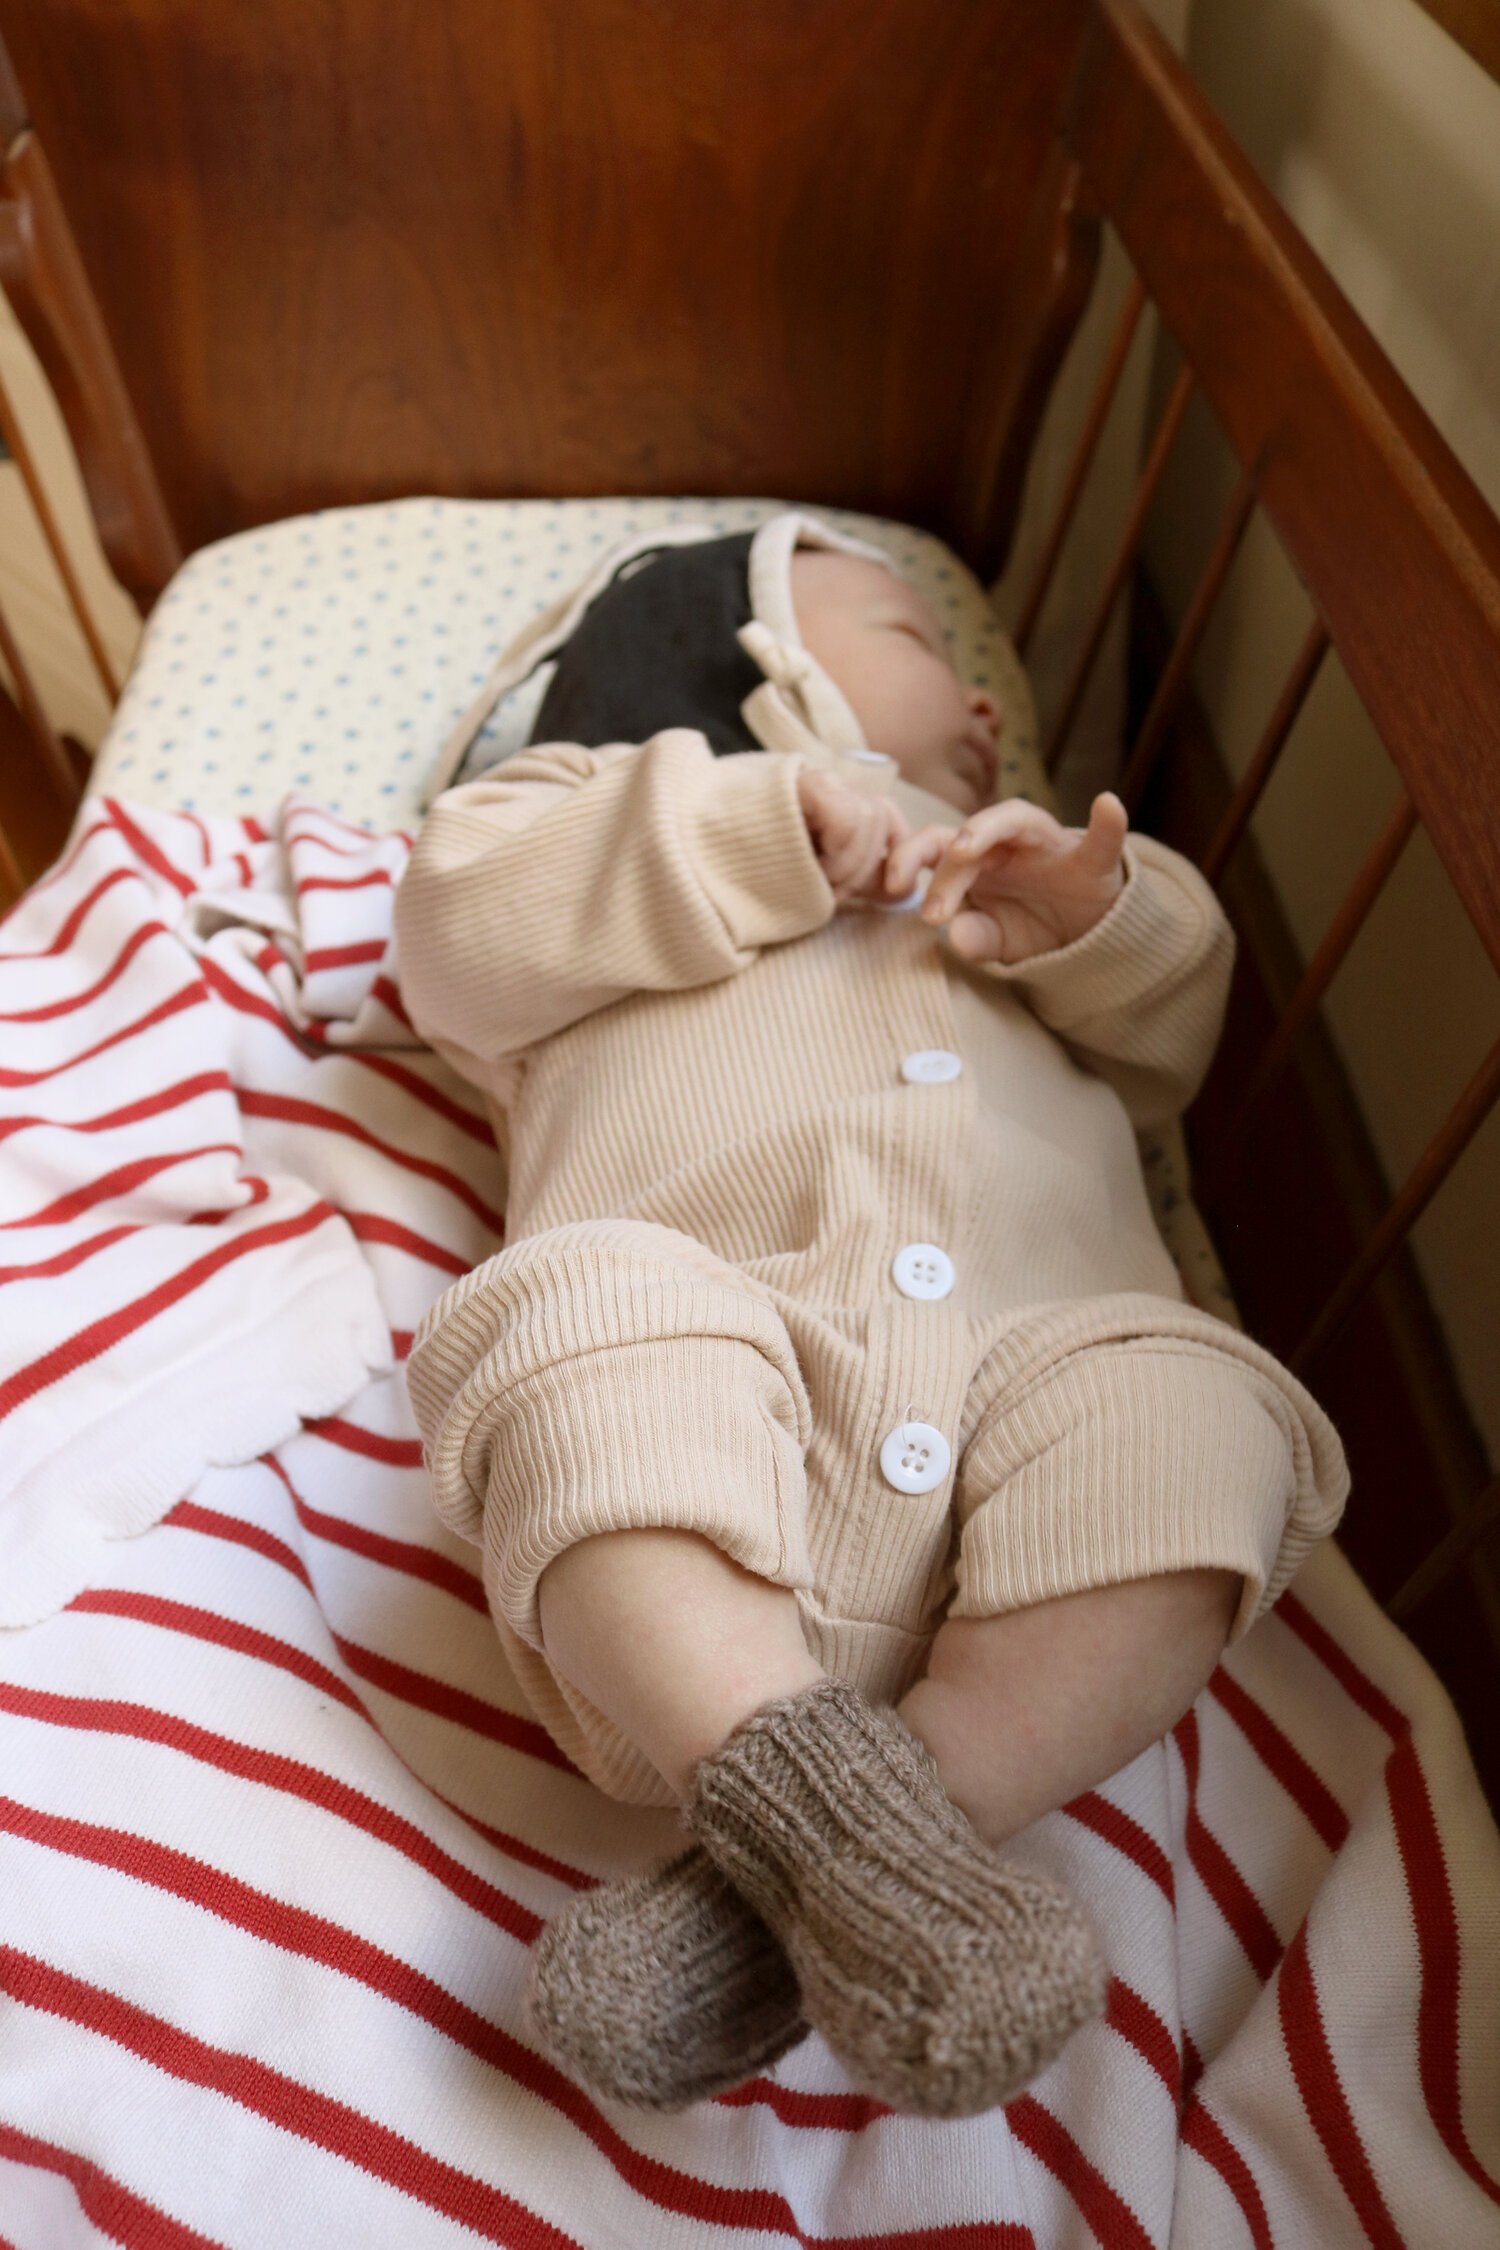 Bitty & Cozy Newborn Socks Knitting Pattern (FREE!) — Under A Tin Roof